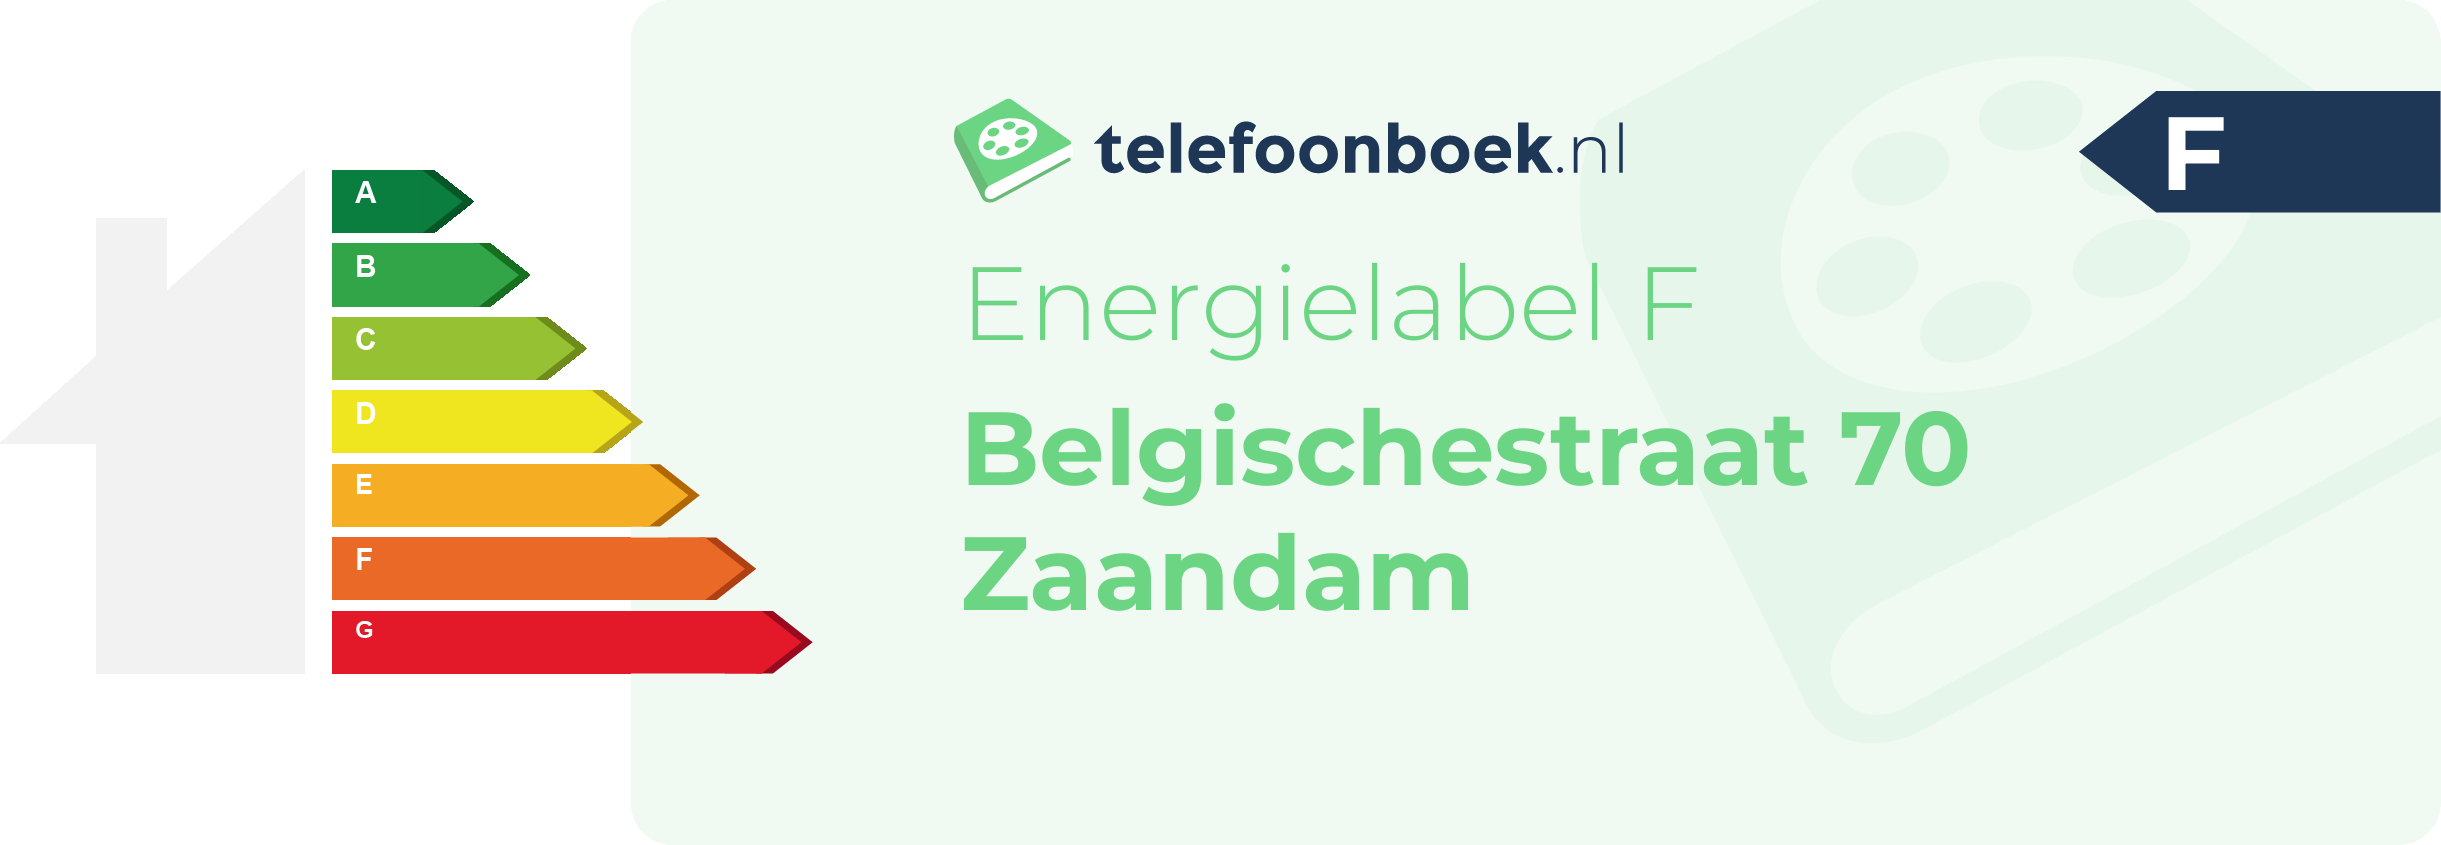 Energielabel Belgischestraat 70 Zaandam